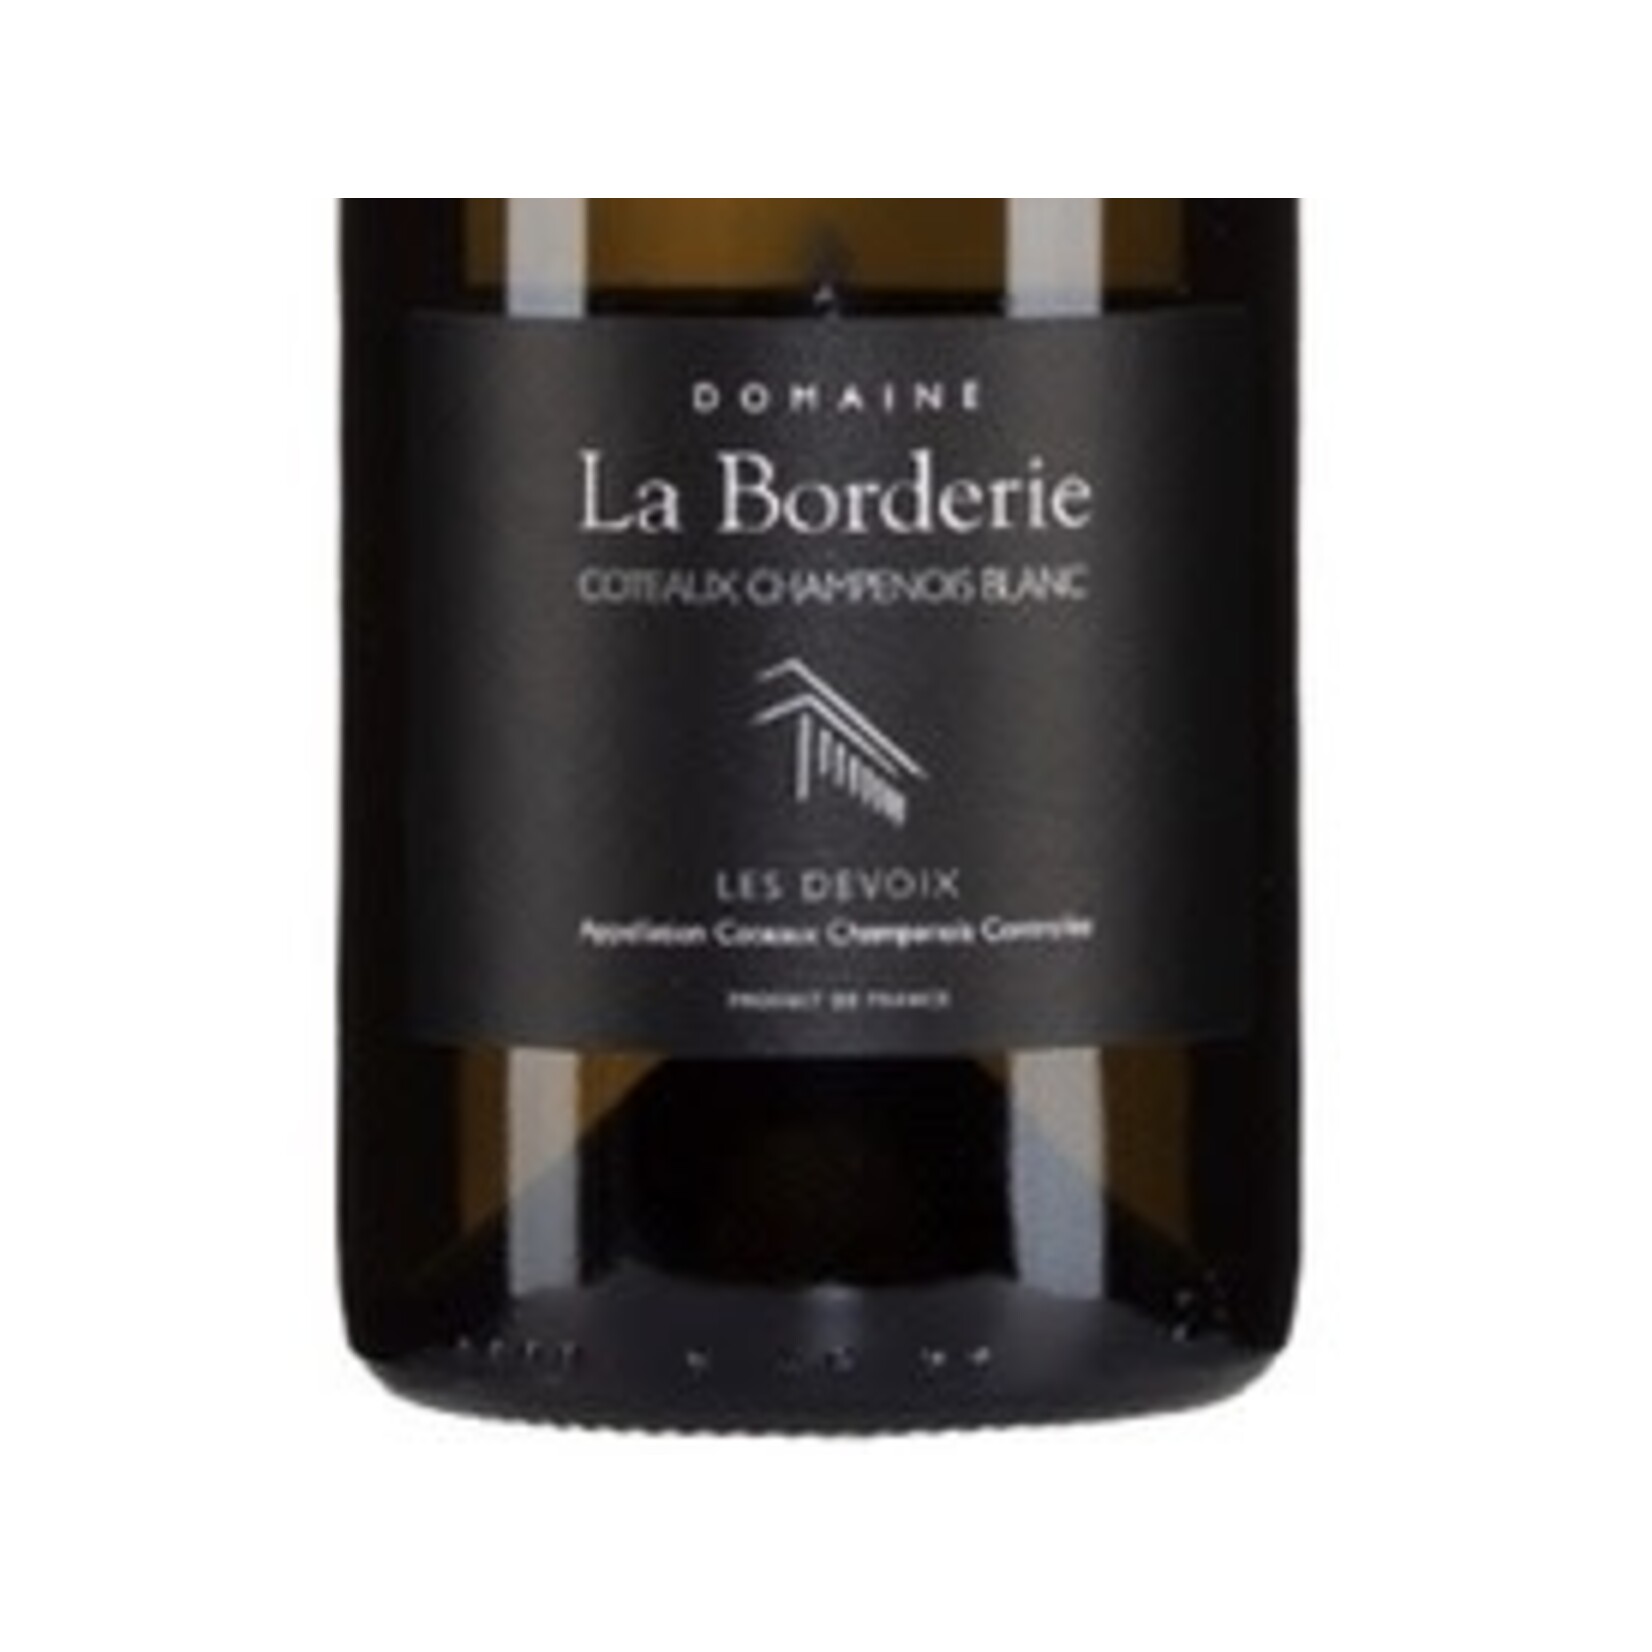 Wine Domaine La Borderie Les Devoix Blanc Coteaux Champenois 2019